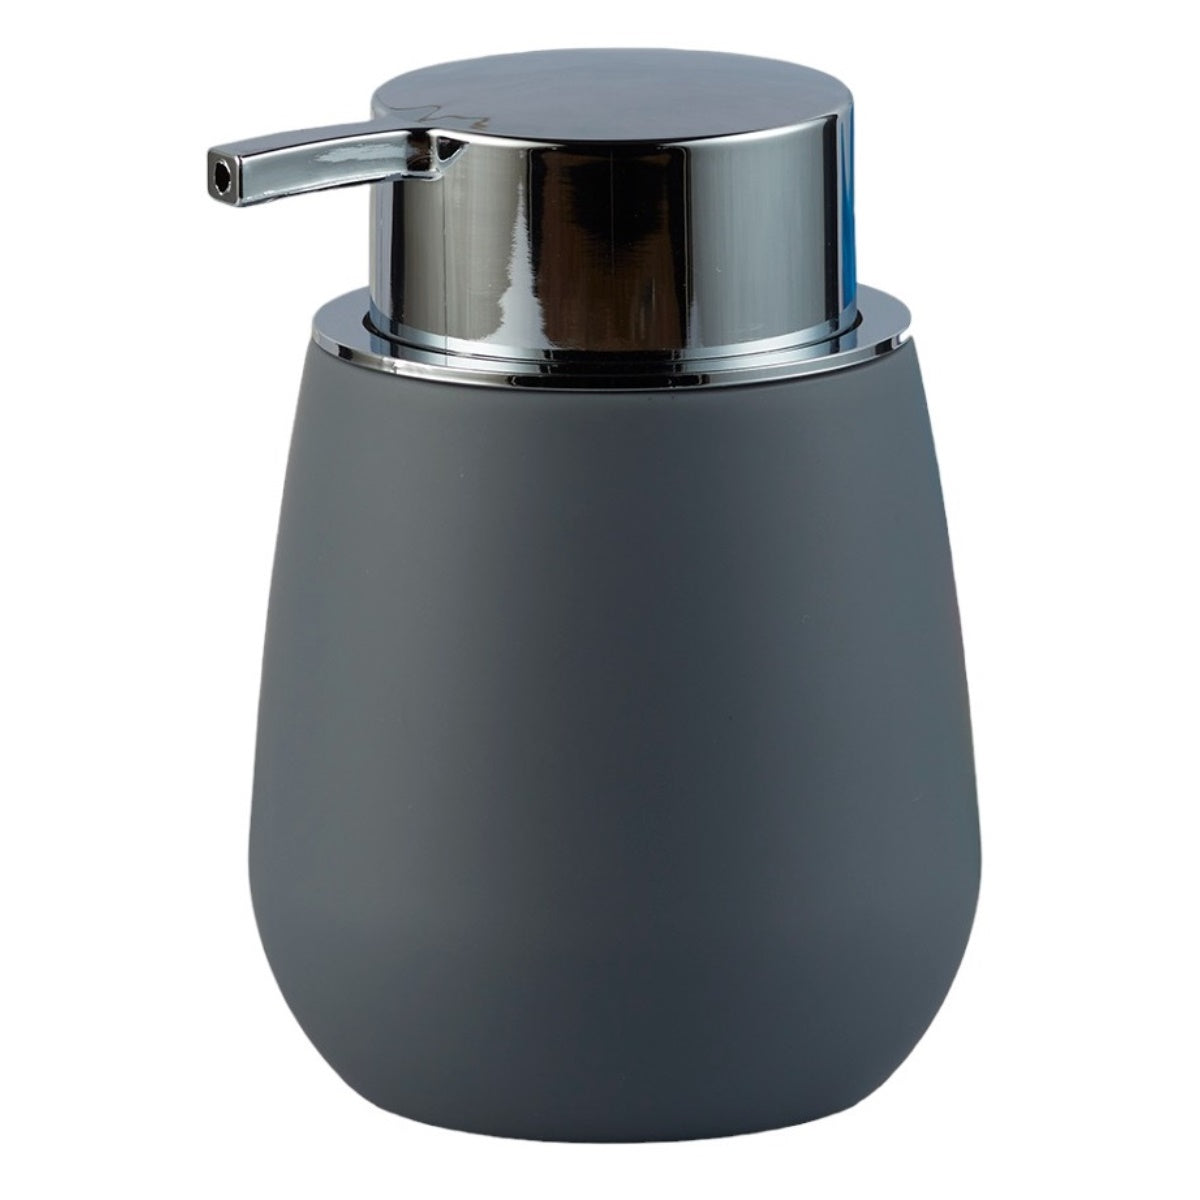 Acrylic Soap Dispenser Pump for Bathroom for Bath Gel, Lotion, Shampoo (9961)